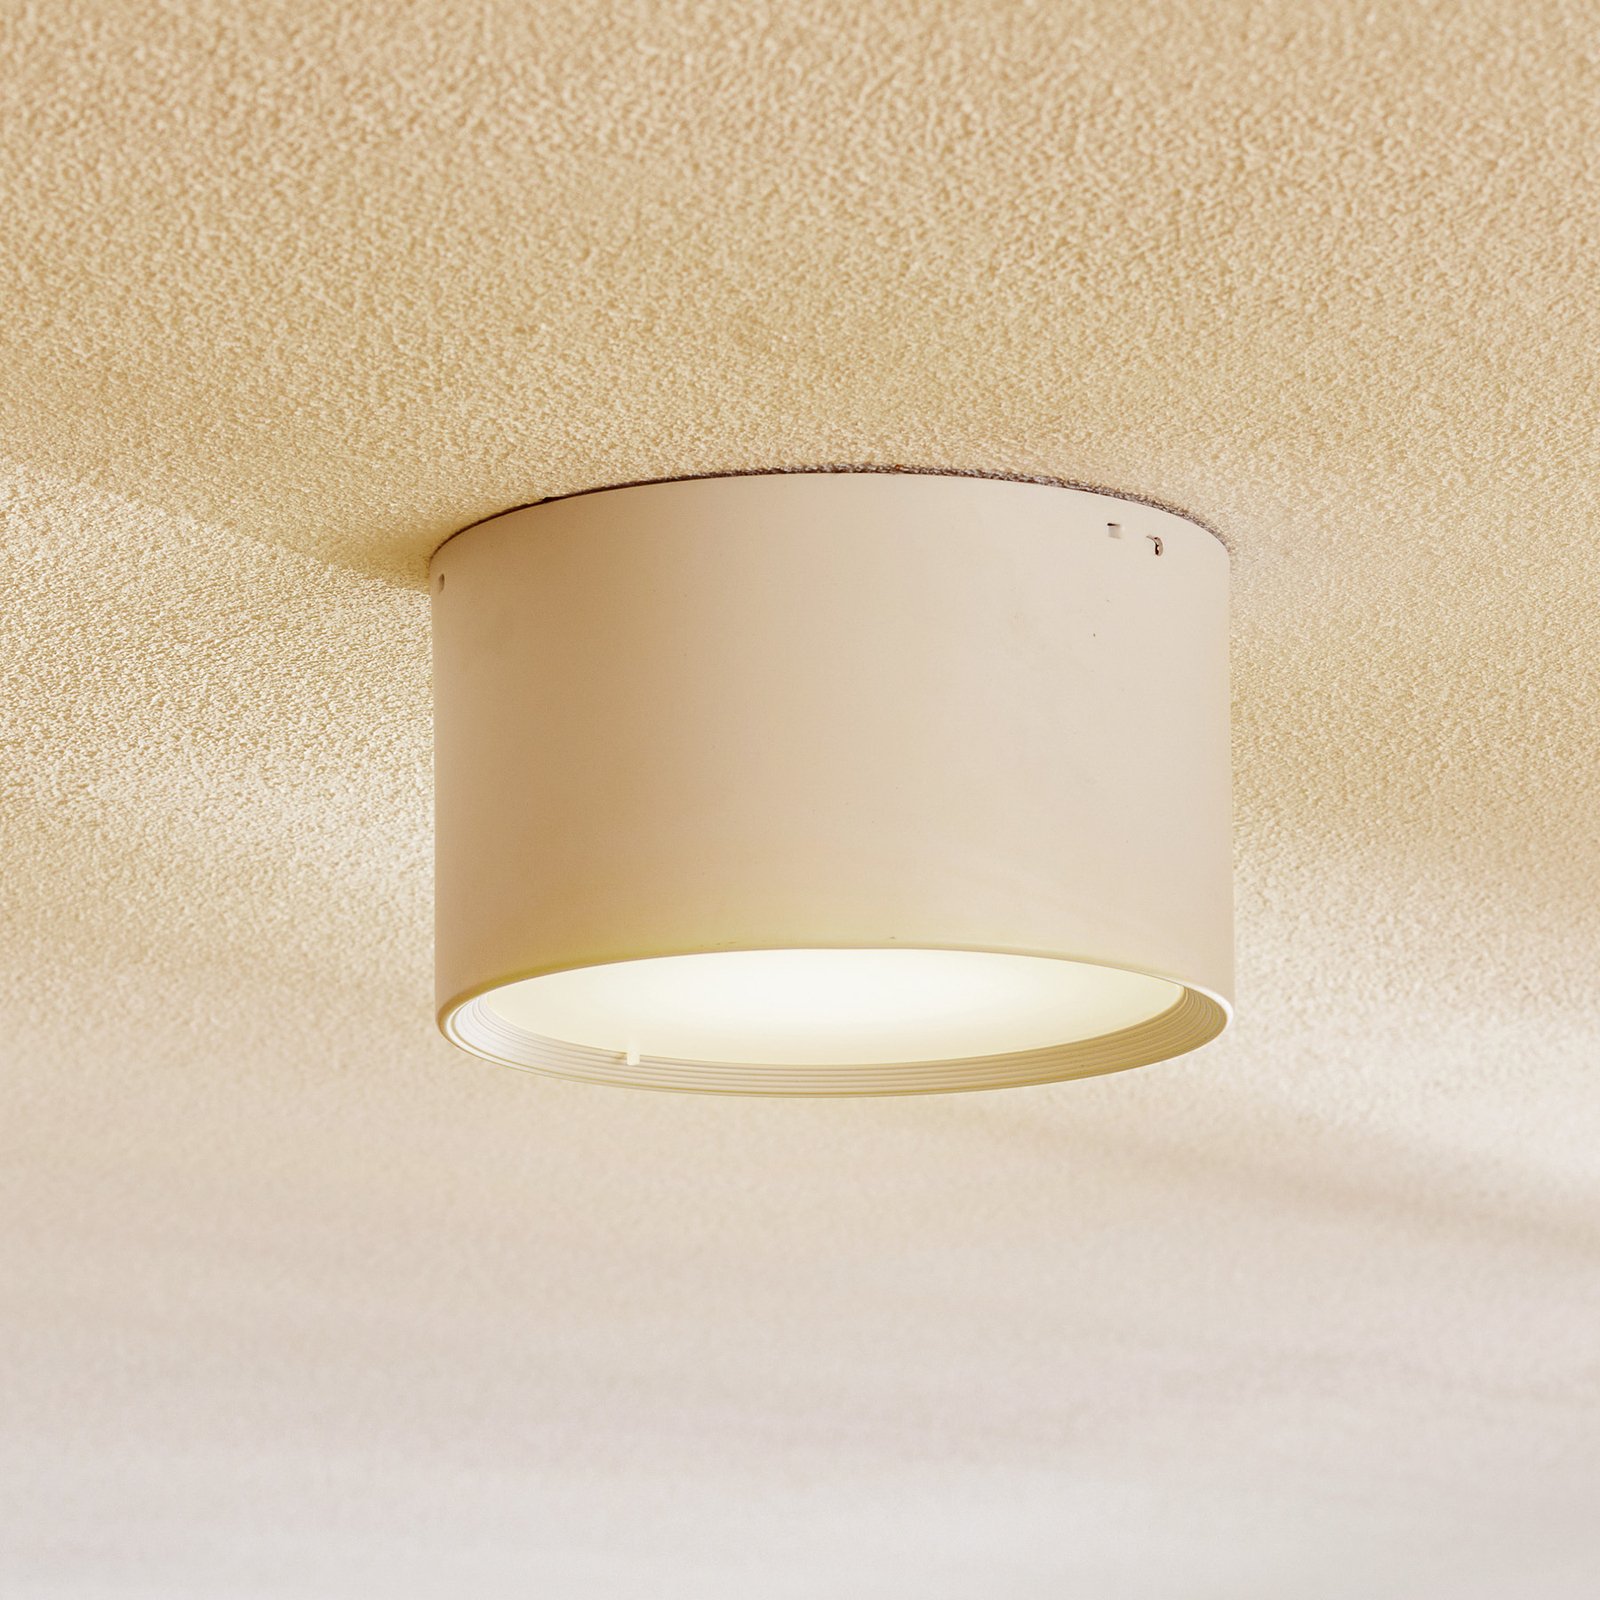 LED-Downlight Ita in Weiß mit Diffusor, Ø 15 cm